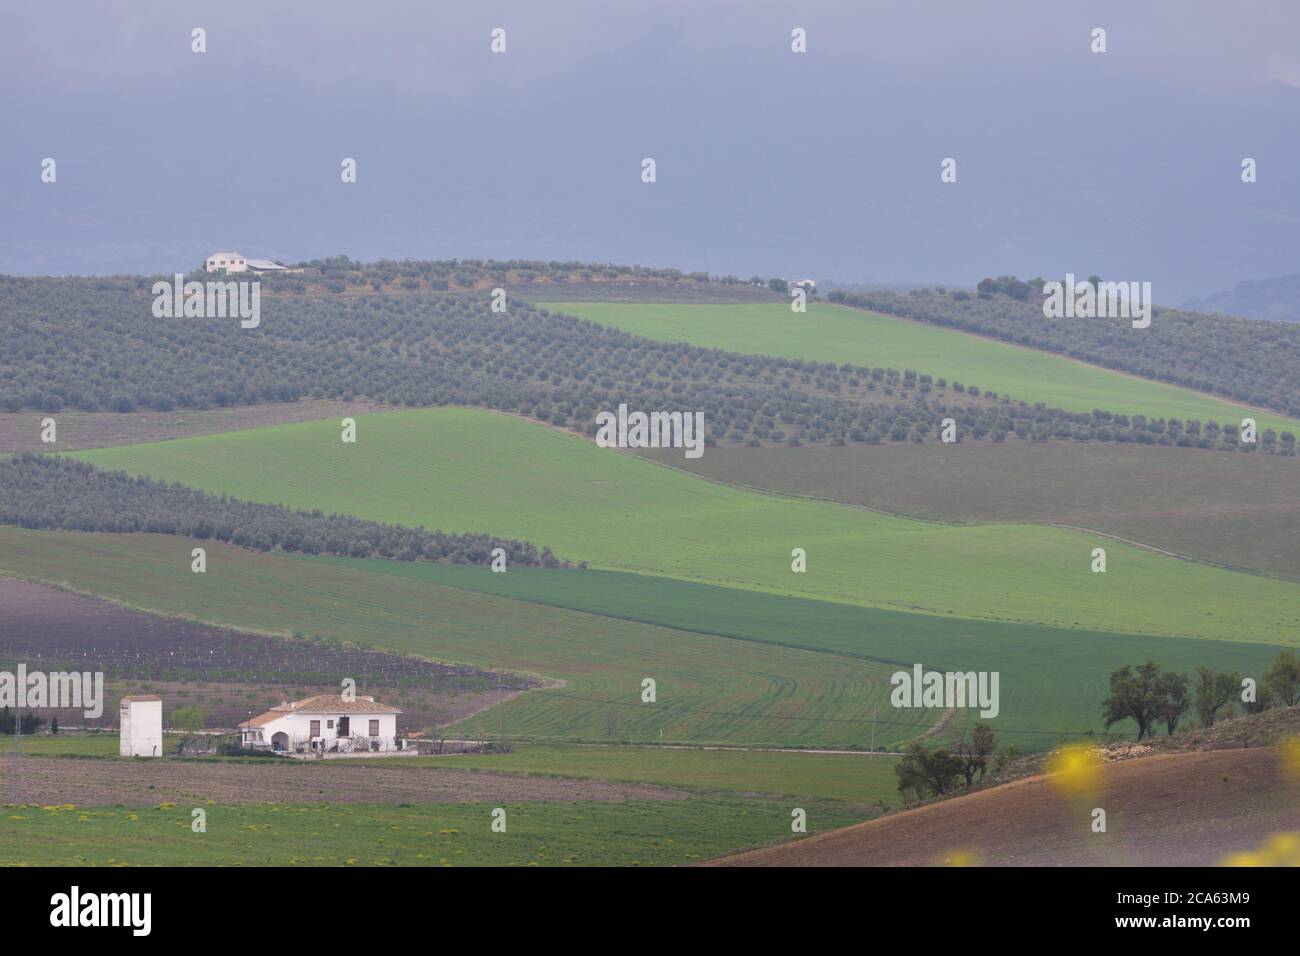 Casa colonica andalusa circondata da campi coltivati a cereali e ulivi Foto Stock